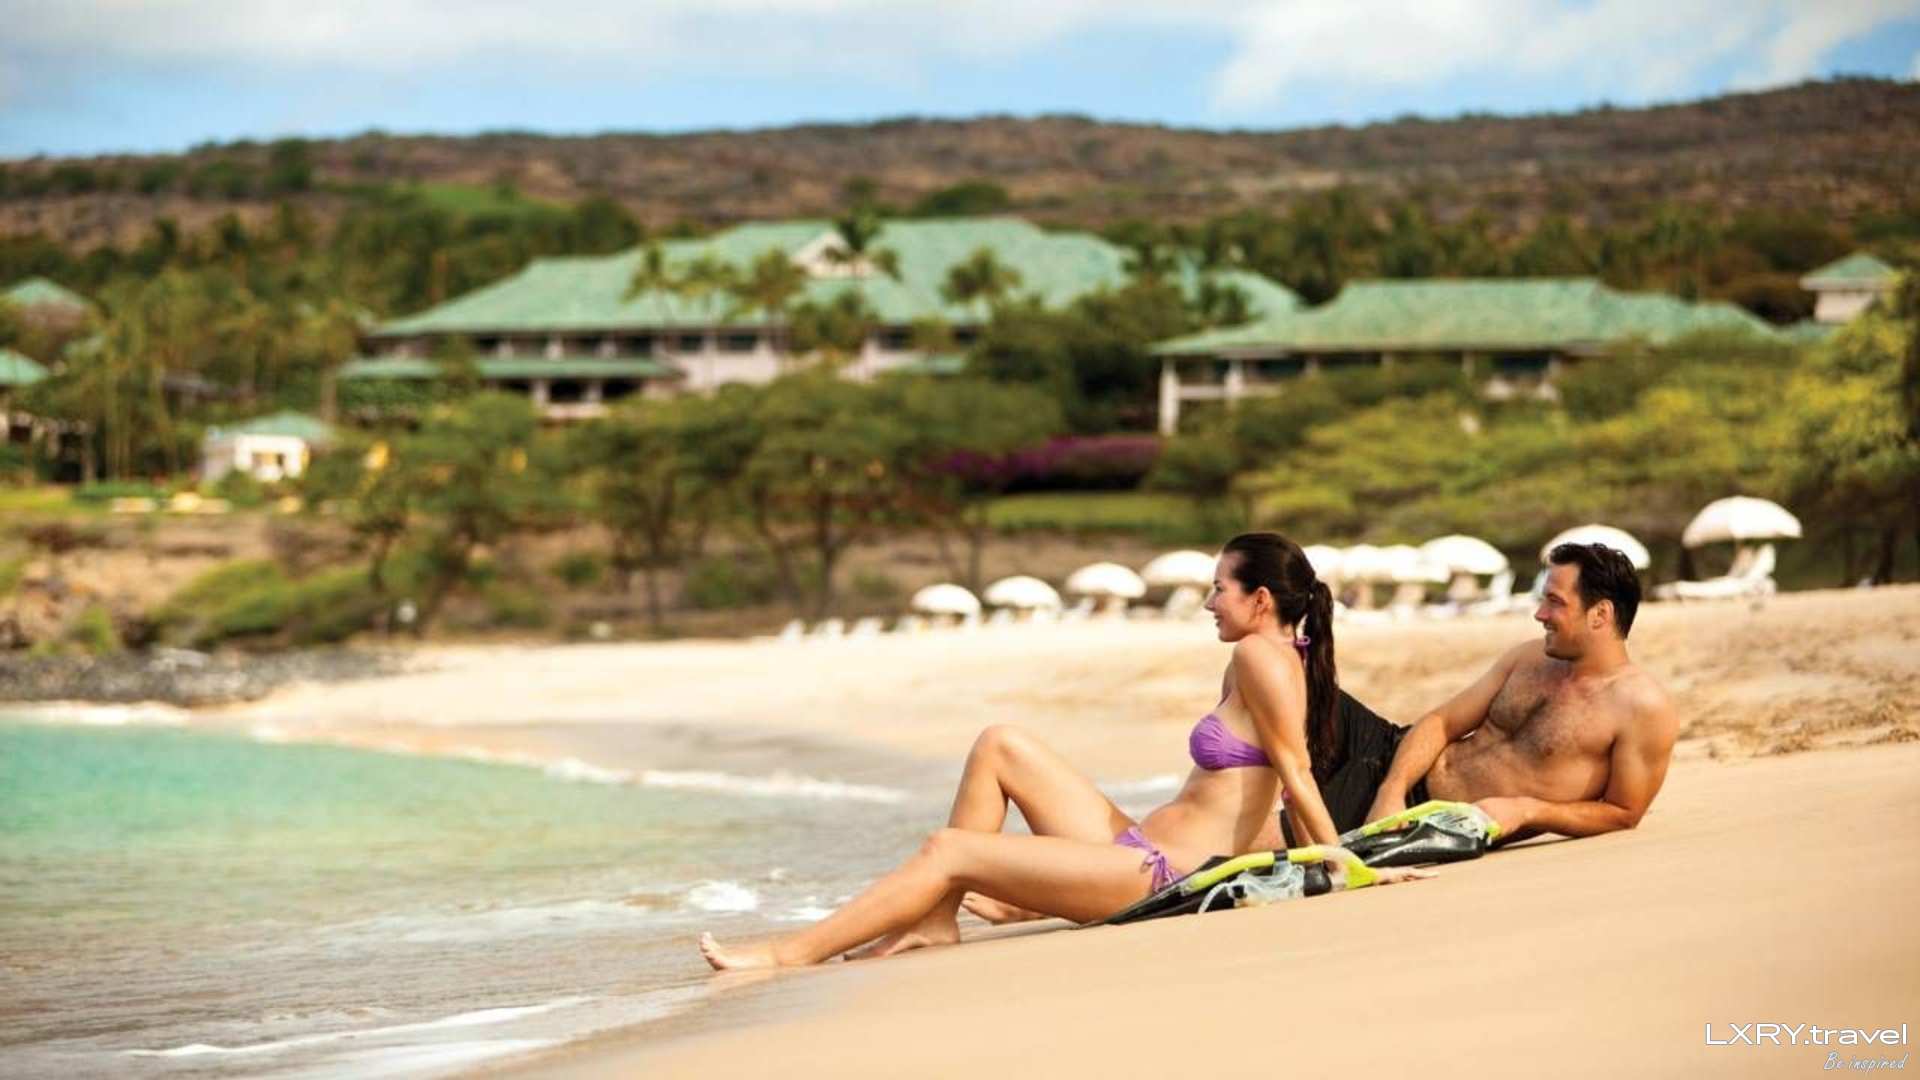 Куда поехать отдохнуть на 2 дня. Медовый месяц на Гавайях. Медовый месяц на Гавайях фильм. Resort Lana’i в заливе манеле-Бэй. Девушка с мужчиной на Гавайях 94 %.